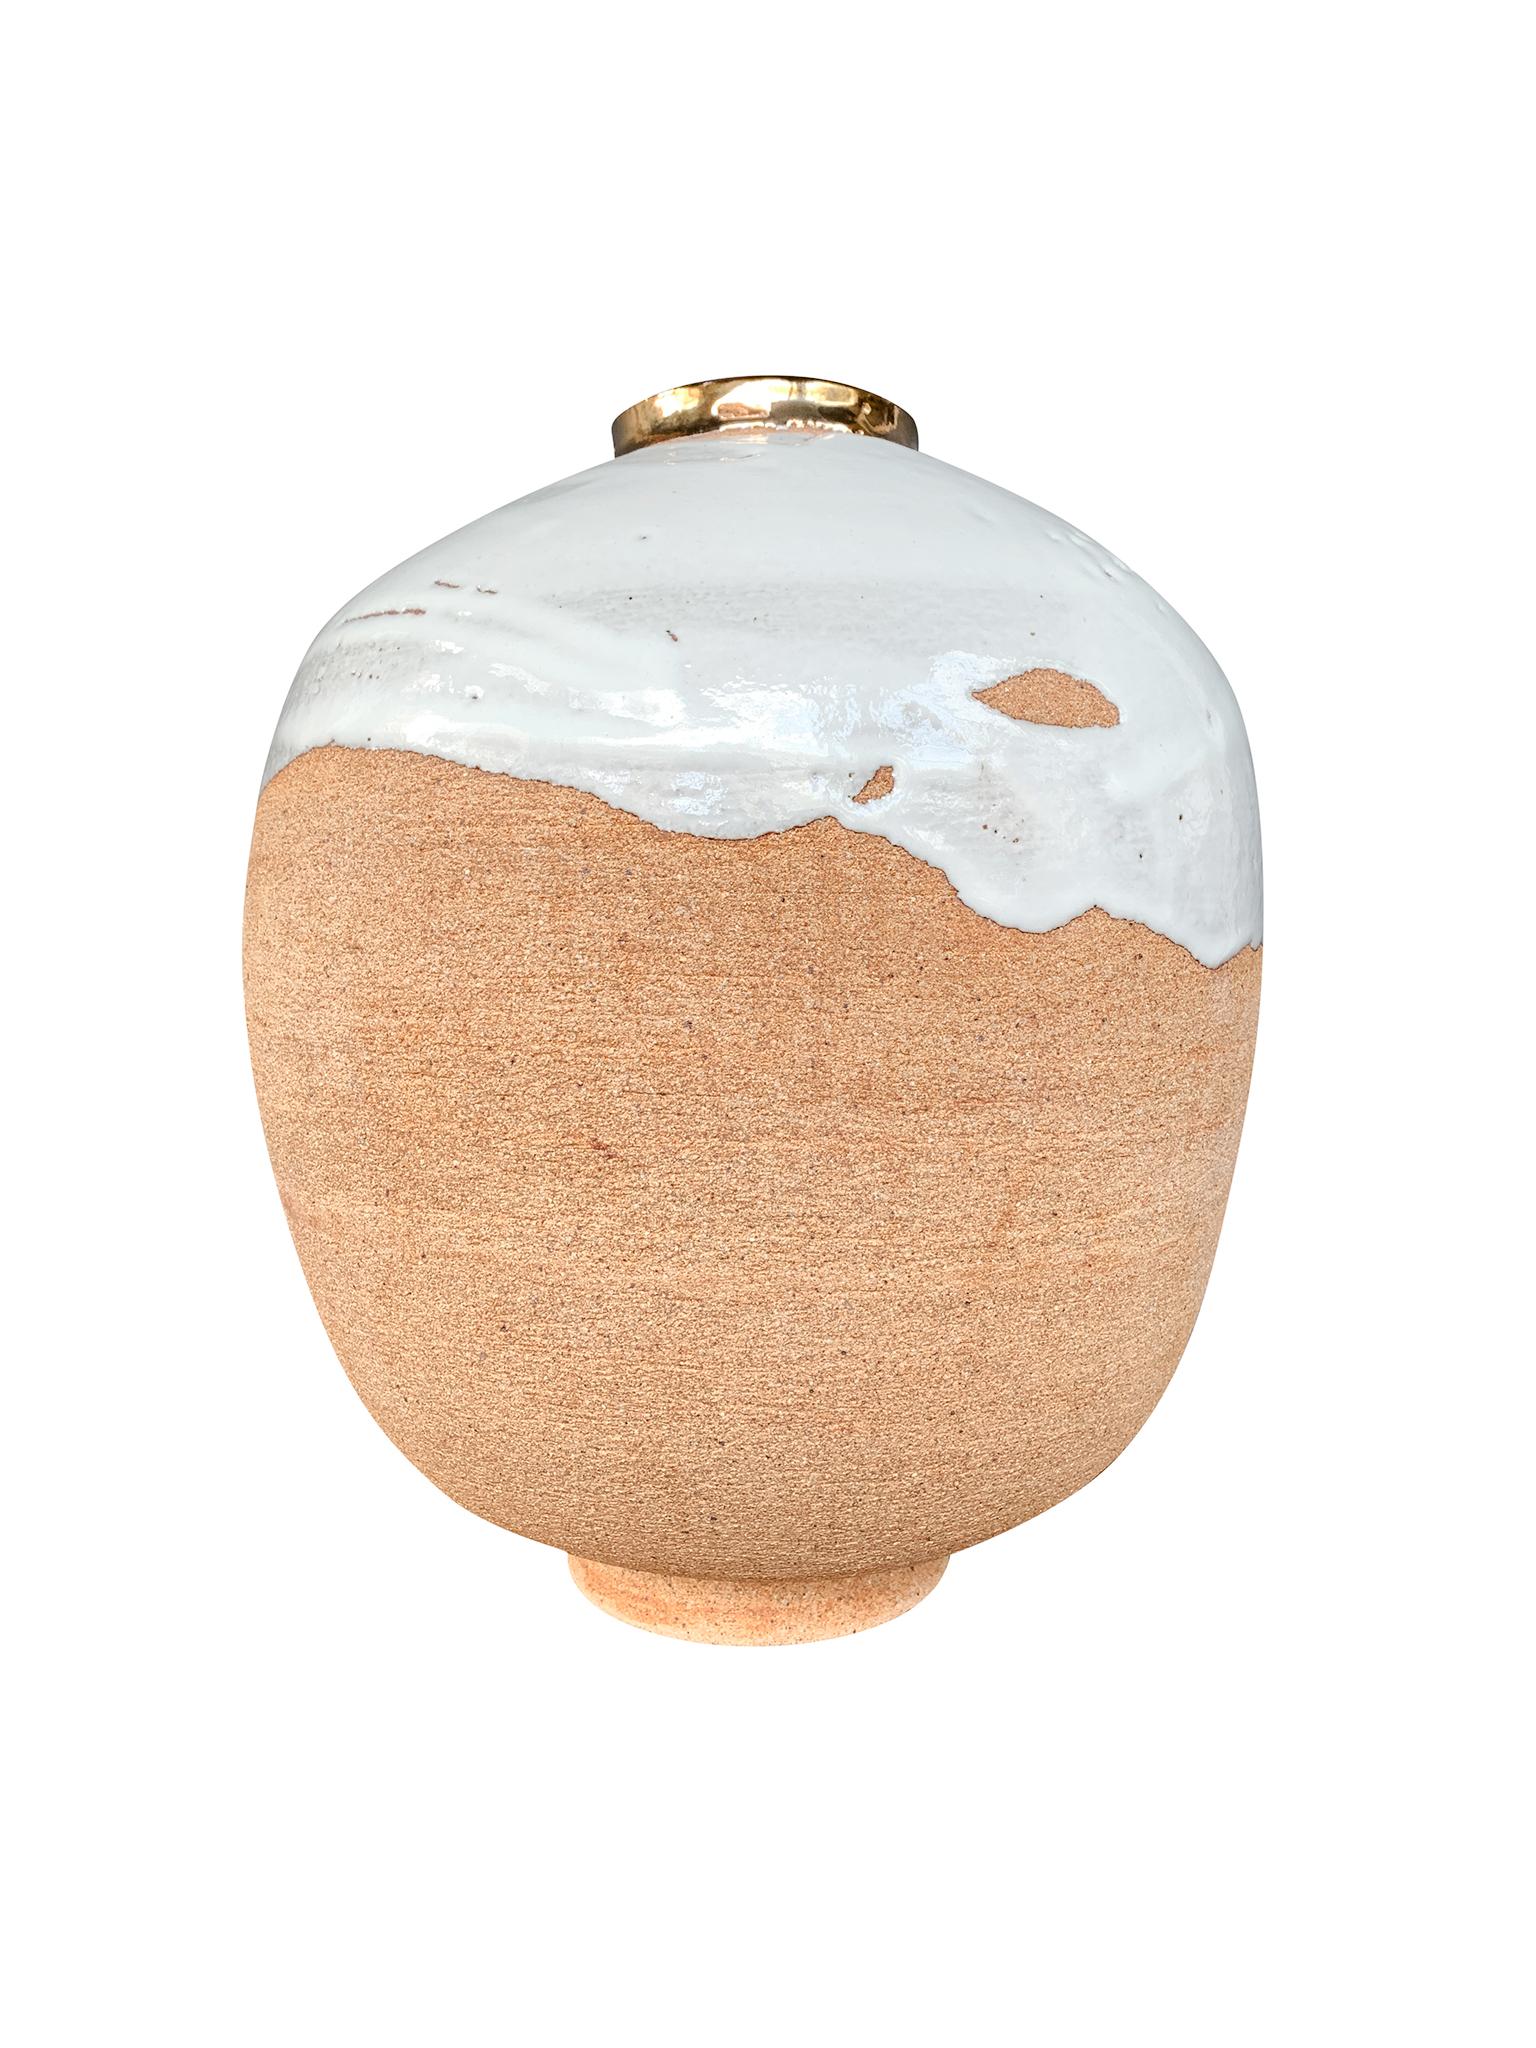 Aus der Kollektion Golden Patina von Thom Lussier - einer Serie von Keramikgefäßen mit farbenprächtigen Oberflächen, die sowohl an irdische als auch an außerirdische Gegenden erinnern. #5 hat eine runde Form mit einer lippenförmigen Öffnung, die mit